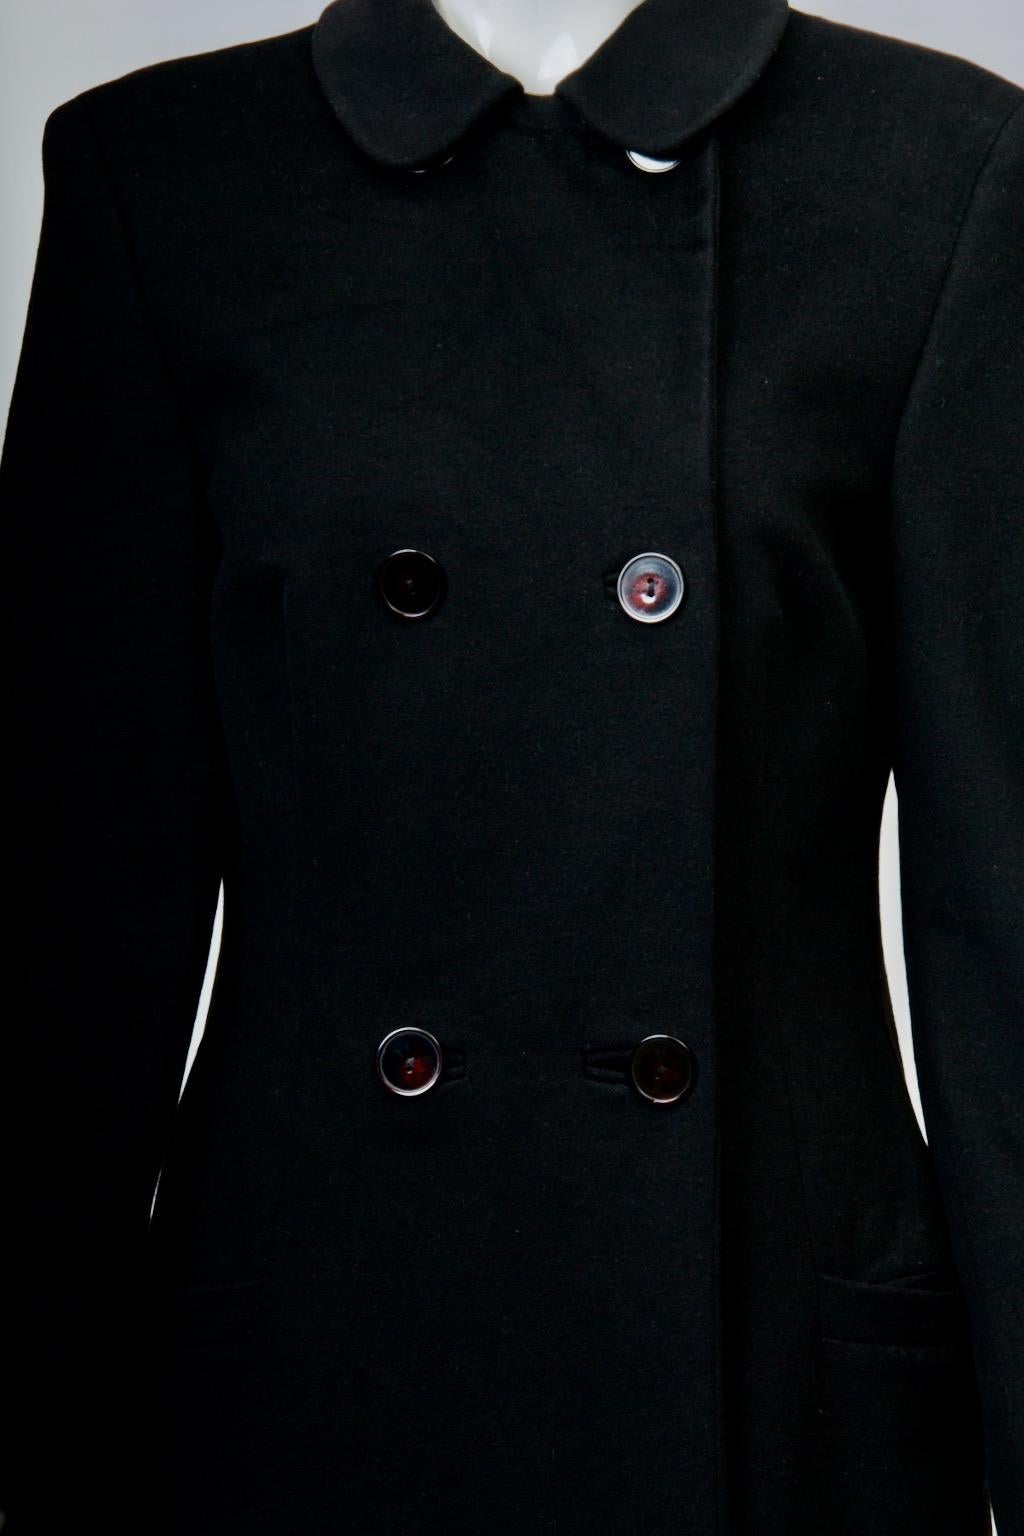 Mantel von Gianni Versace aus den 1990er Jahren aus einer weichen 15%igen Kaschmir-Woll-Mischung mit einem echten Zweireiher, der bis zu einem kleinen Rundkragen geknöpft werden kann. Der Mantel hat Nähte an den Vorder- und Rückseiten sowie Abnäher